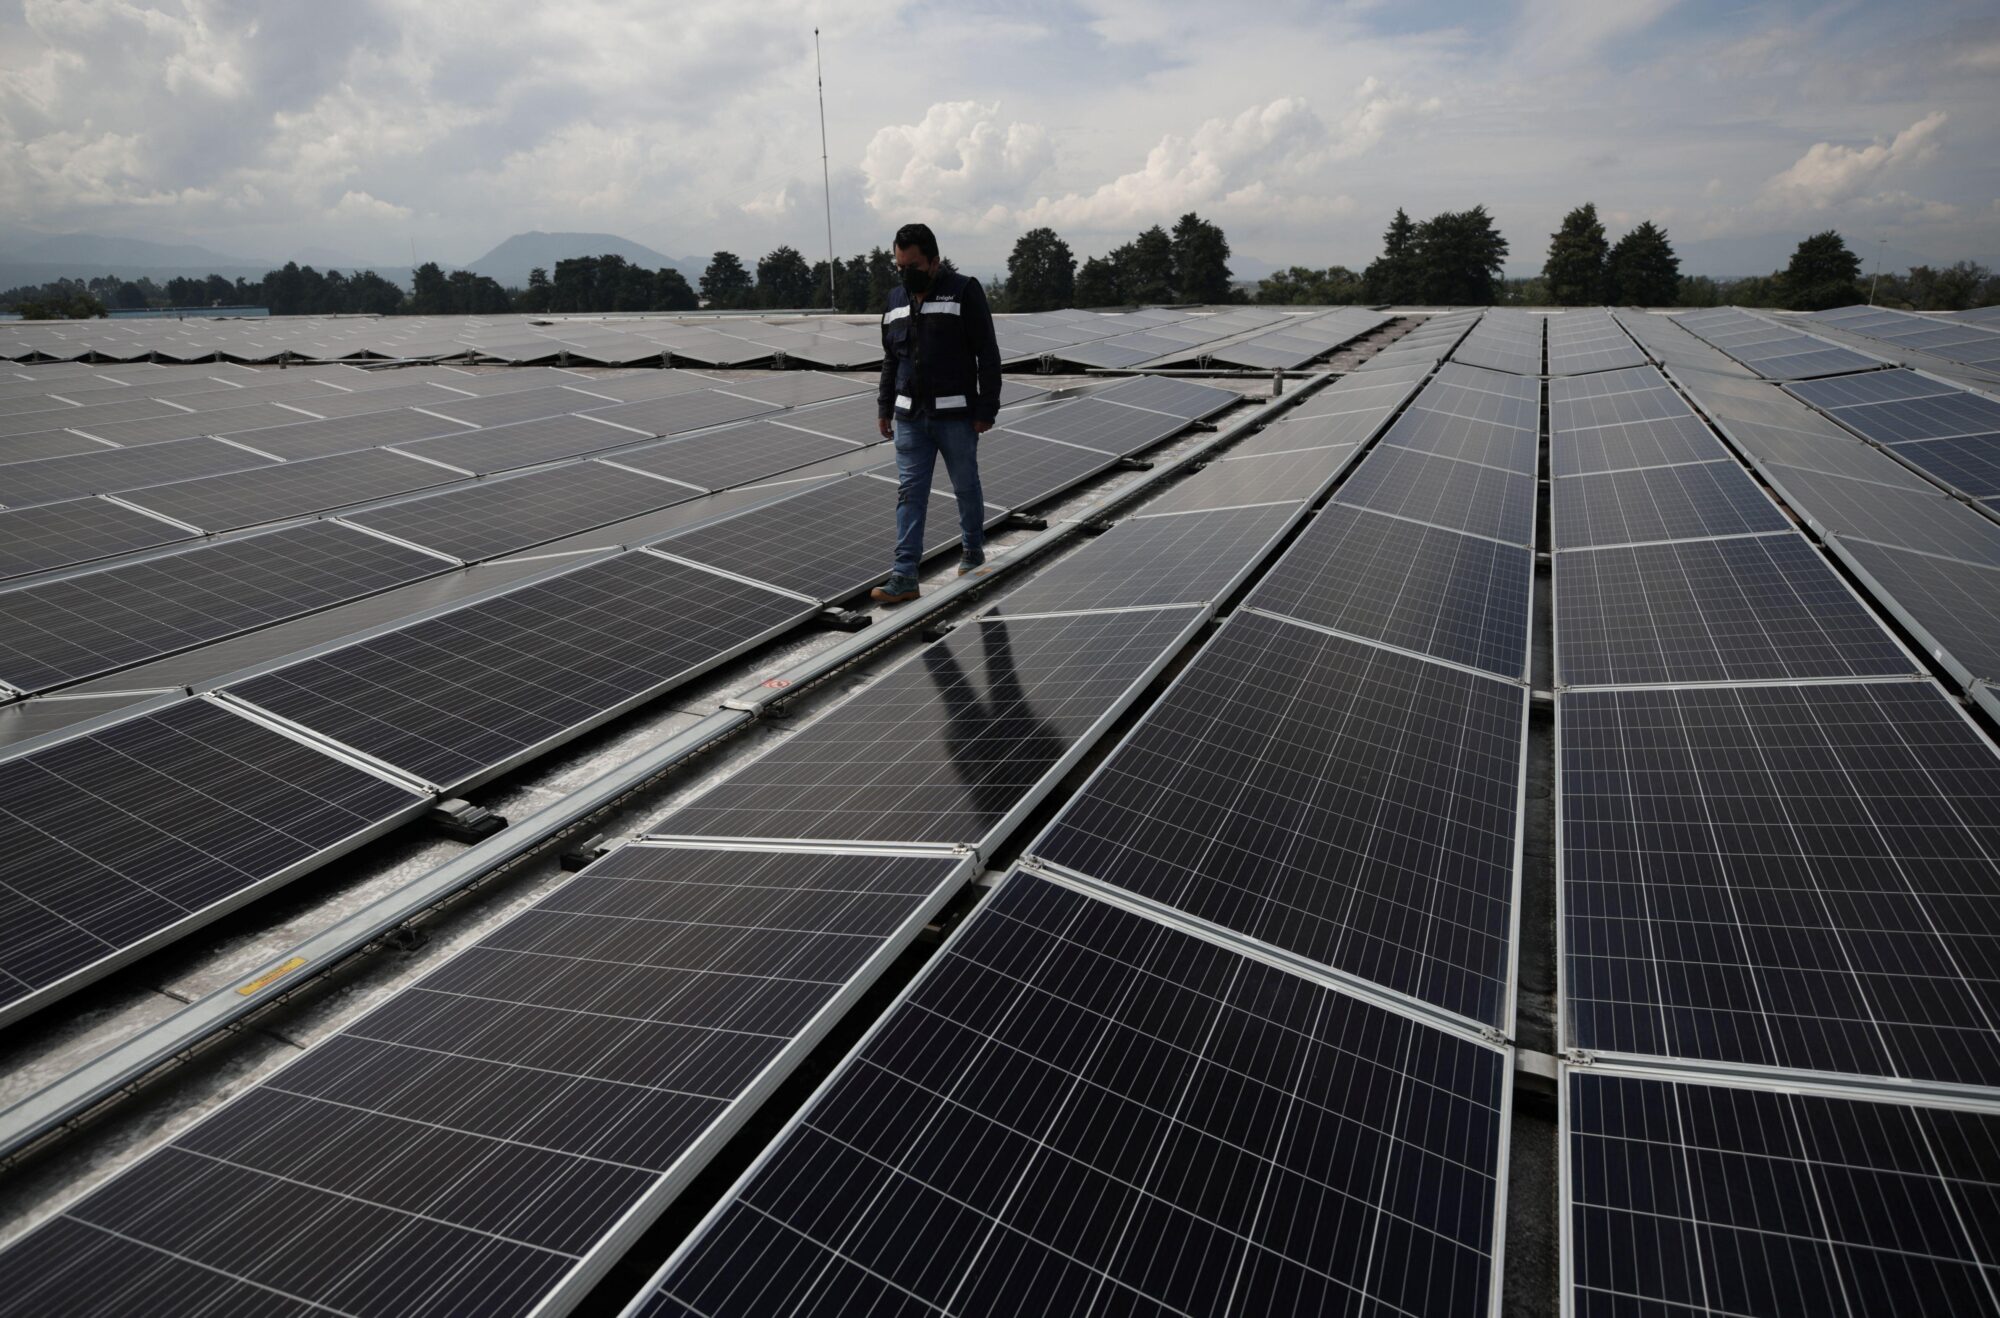 <p>Engenheiro inspeciona painéis solares no México. O plano energético do país inclui a construção do que será a maior usina de energia solar da América Latina (Imagem: Henry Romero / Alamy)</p>